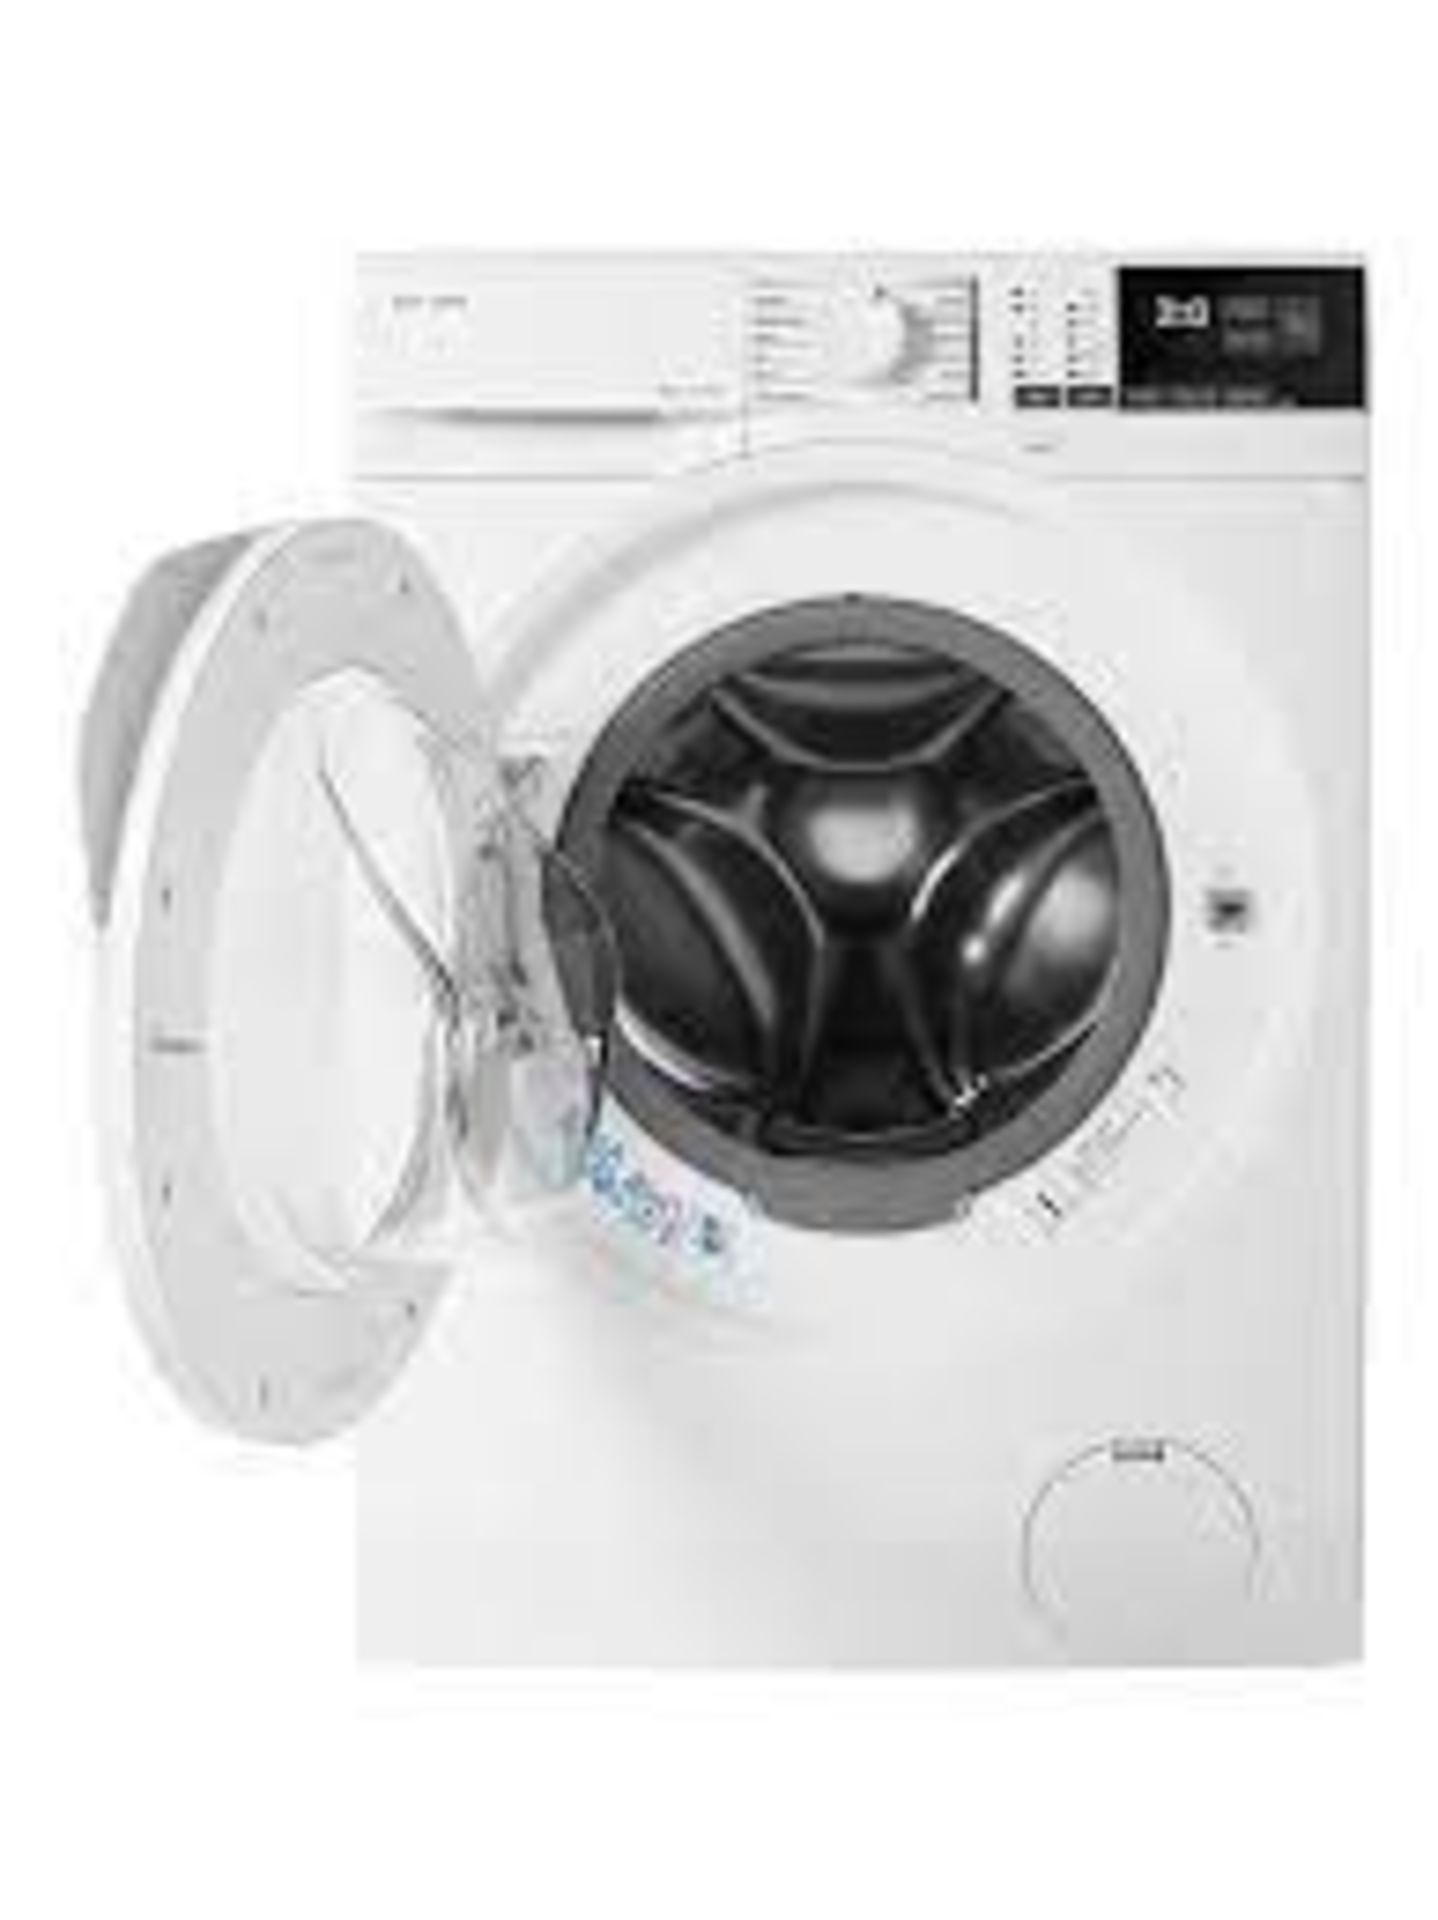 RRP £450 John Lewis Jlwm1417 8Kg Washing Machine - Image 2 of 2